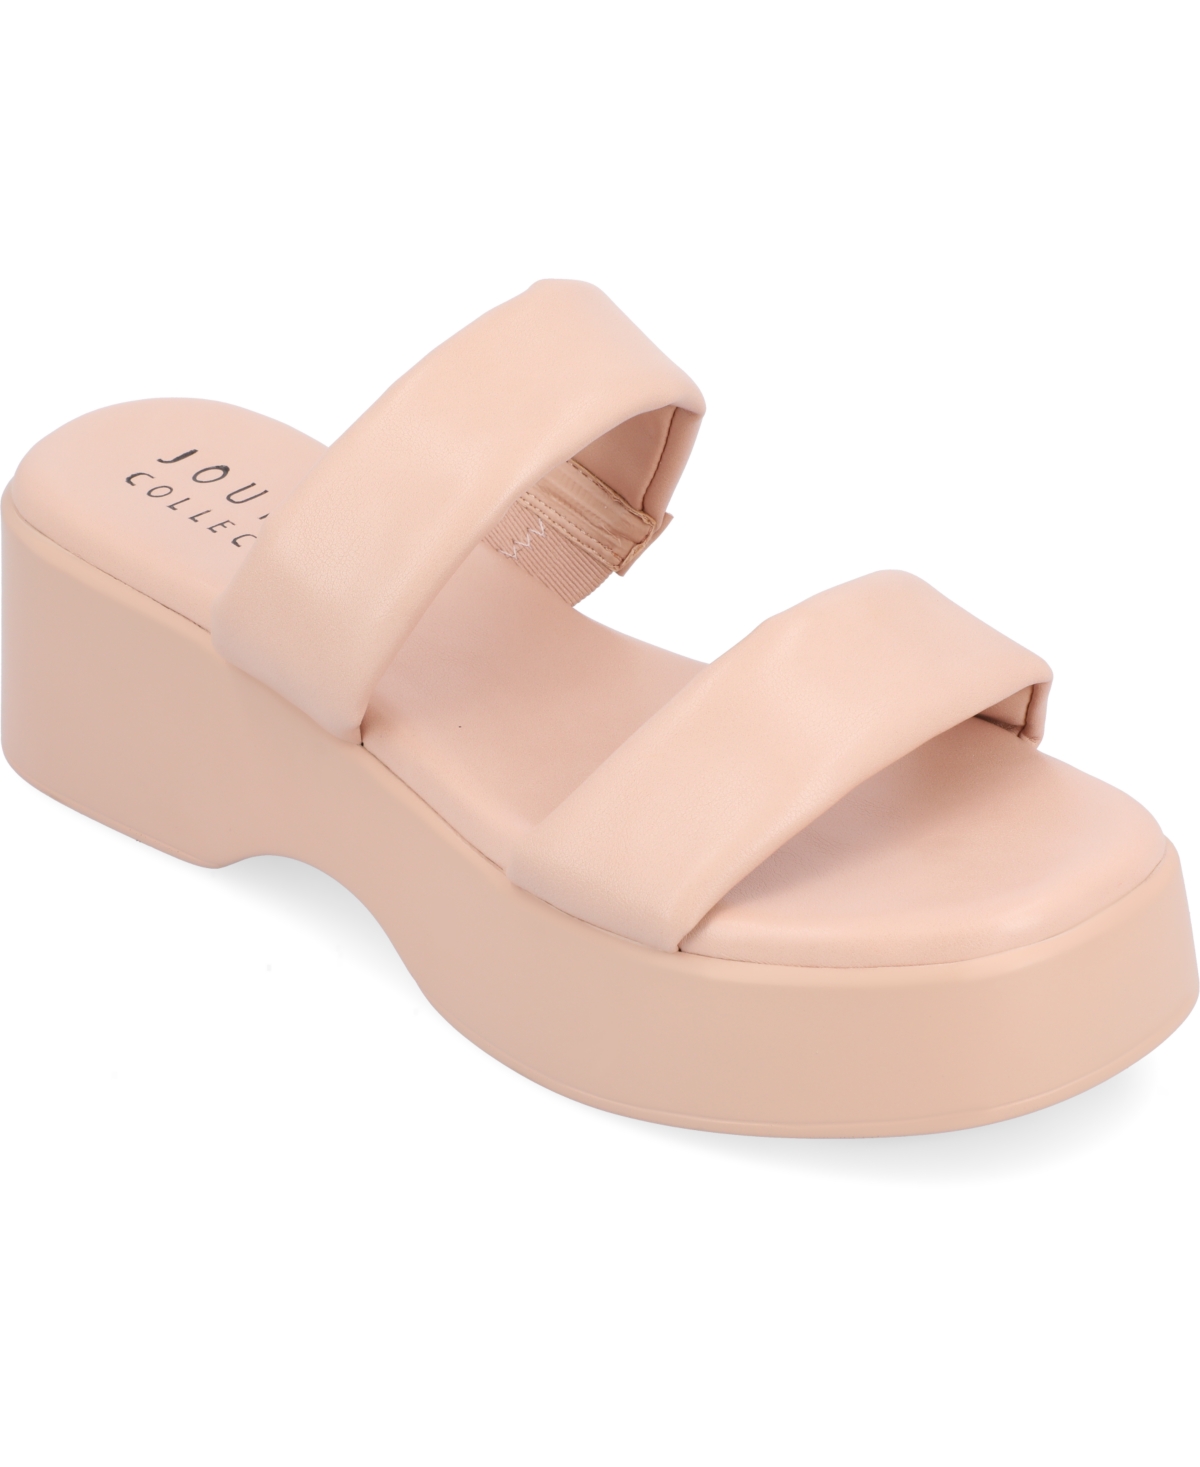 Women's Veradie Platform Sandals - Blush